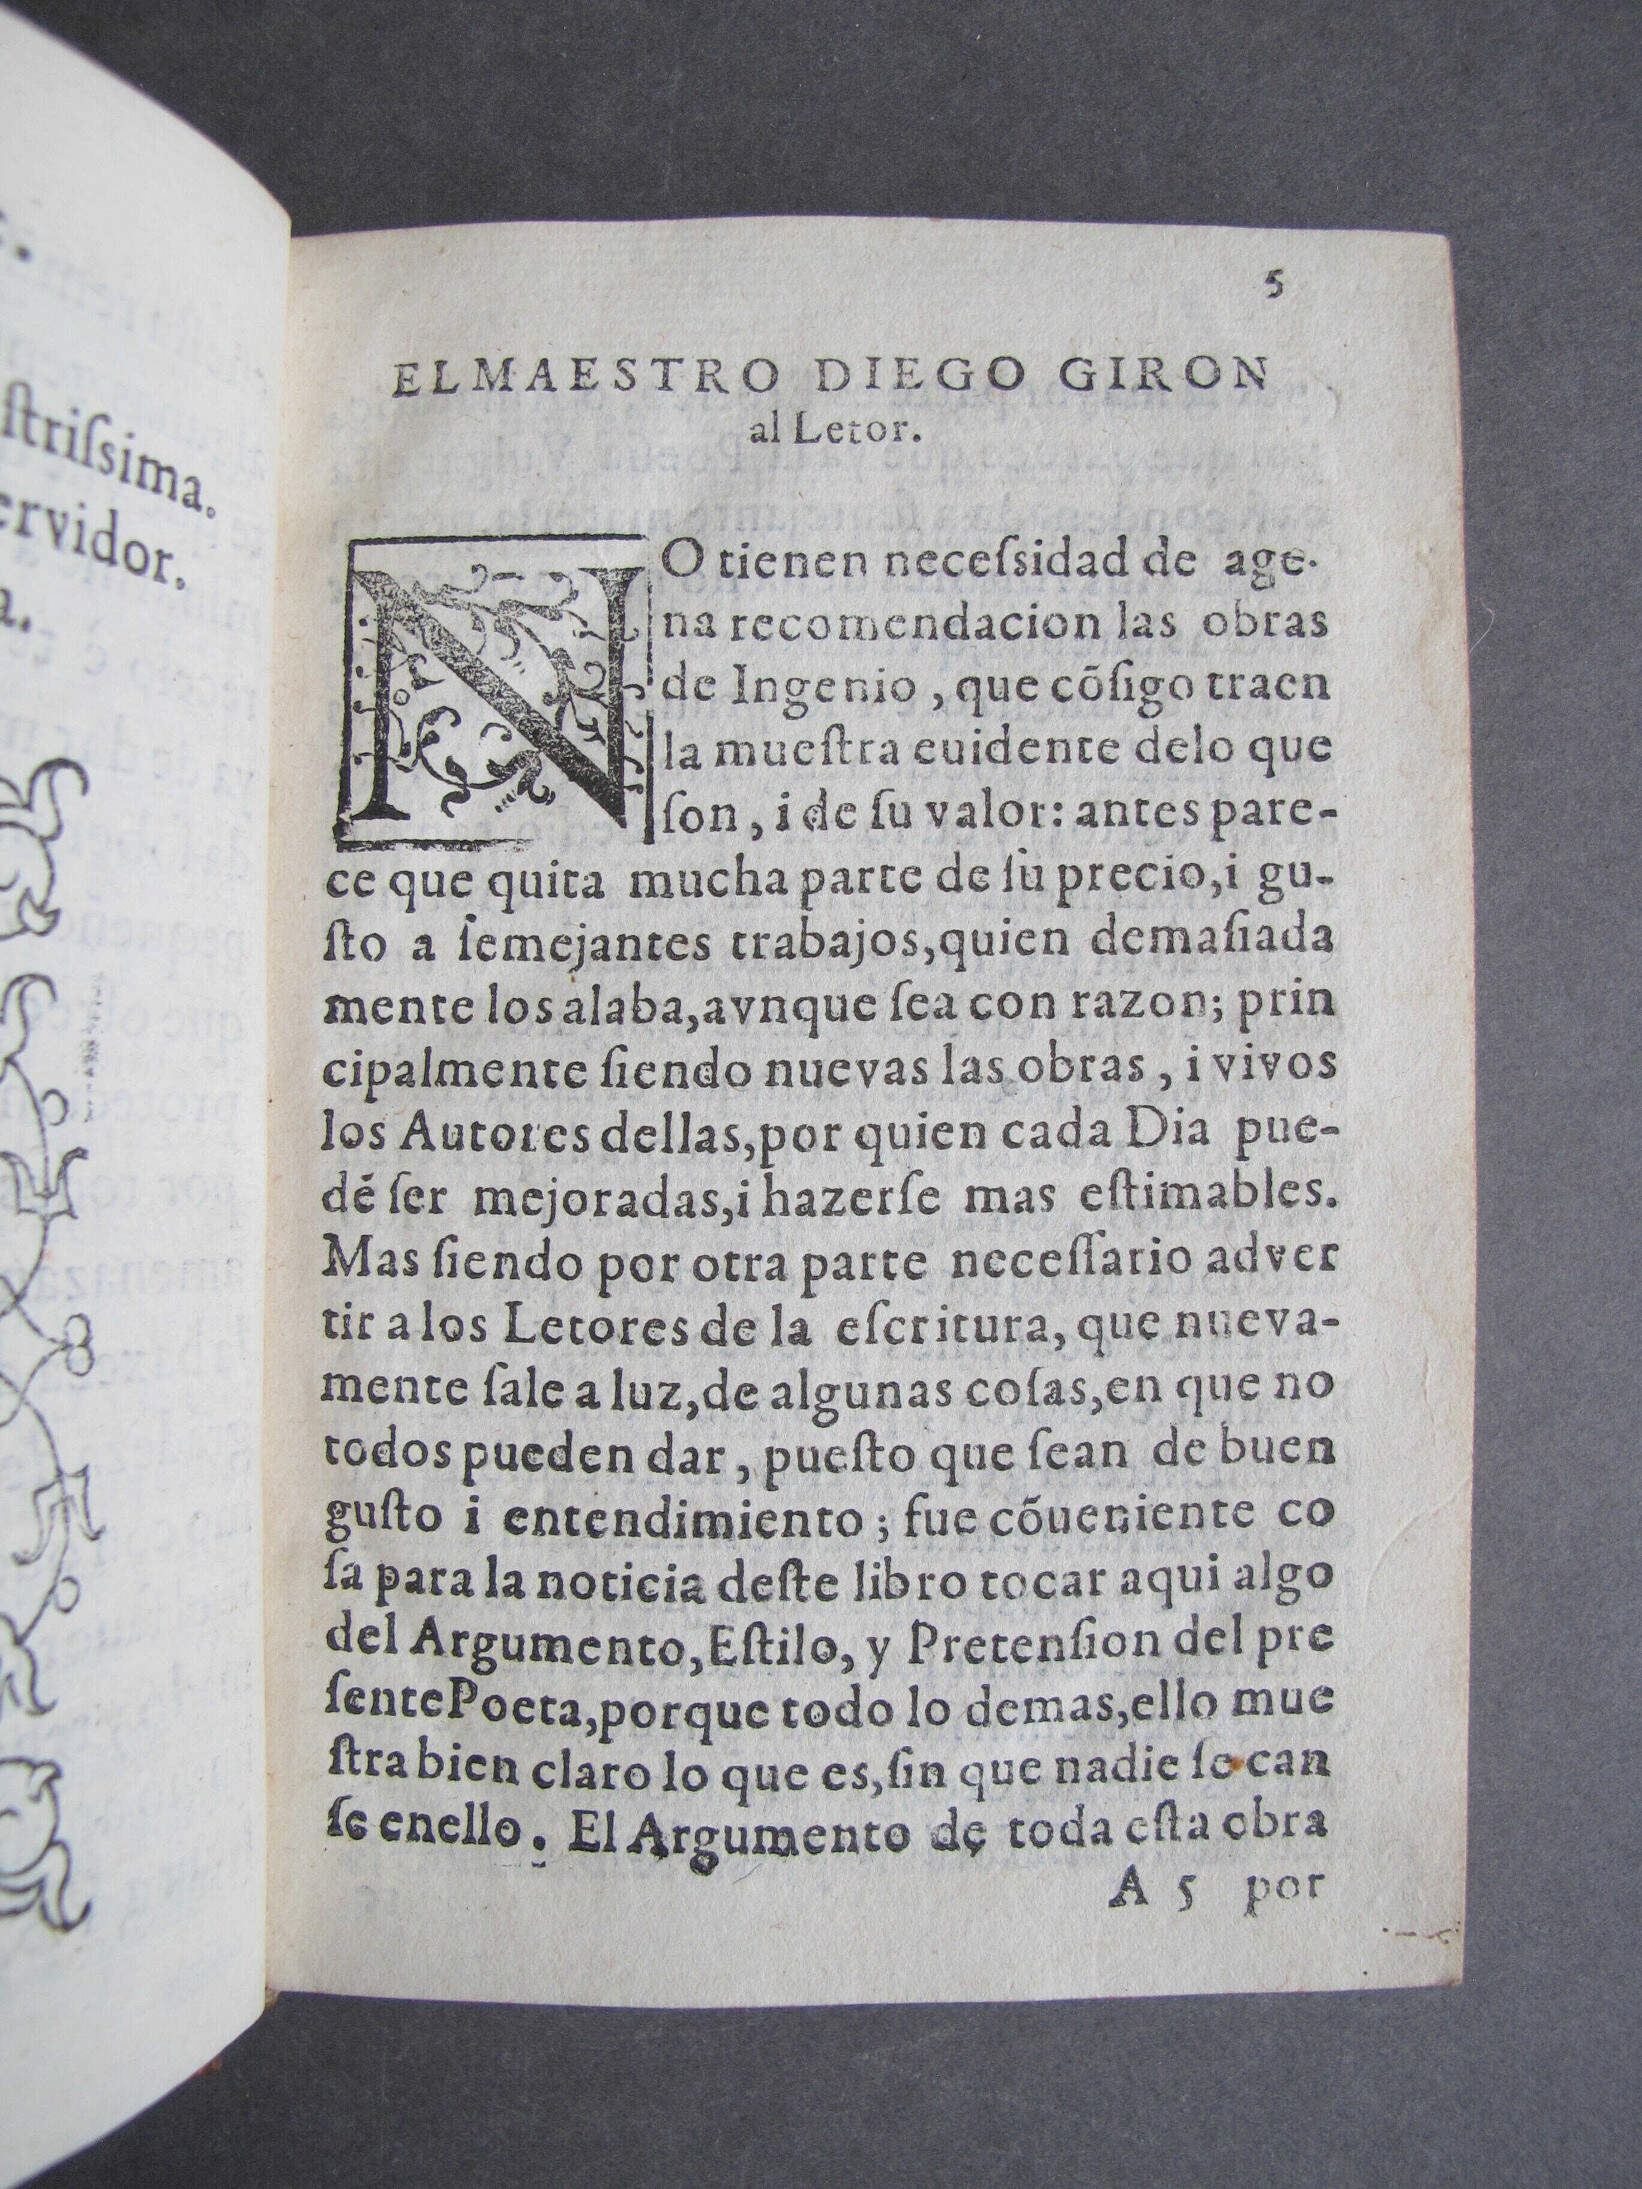 Folio A5